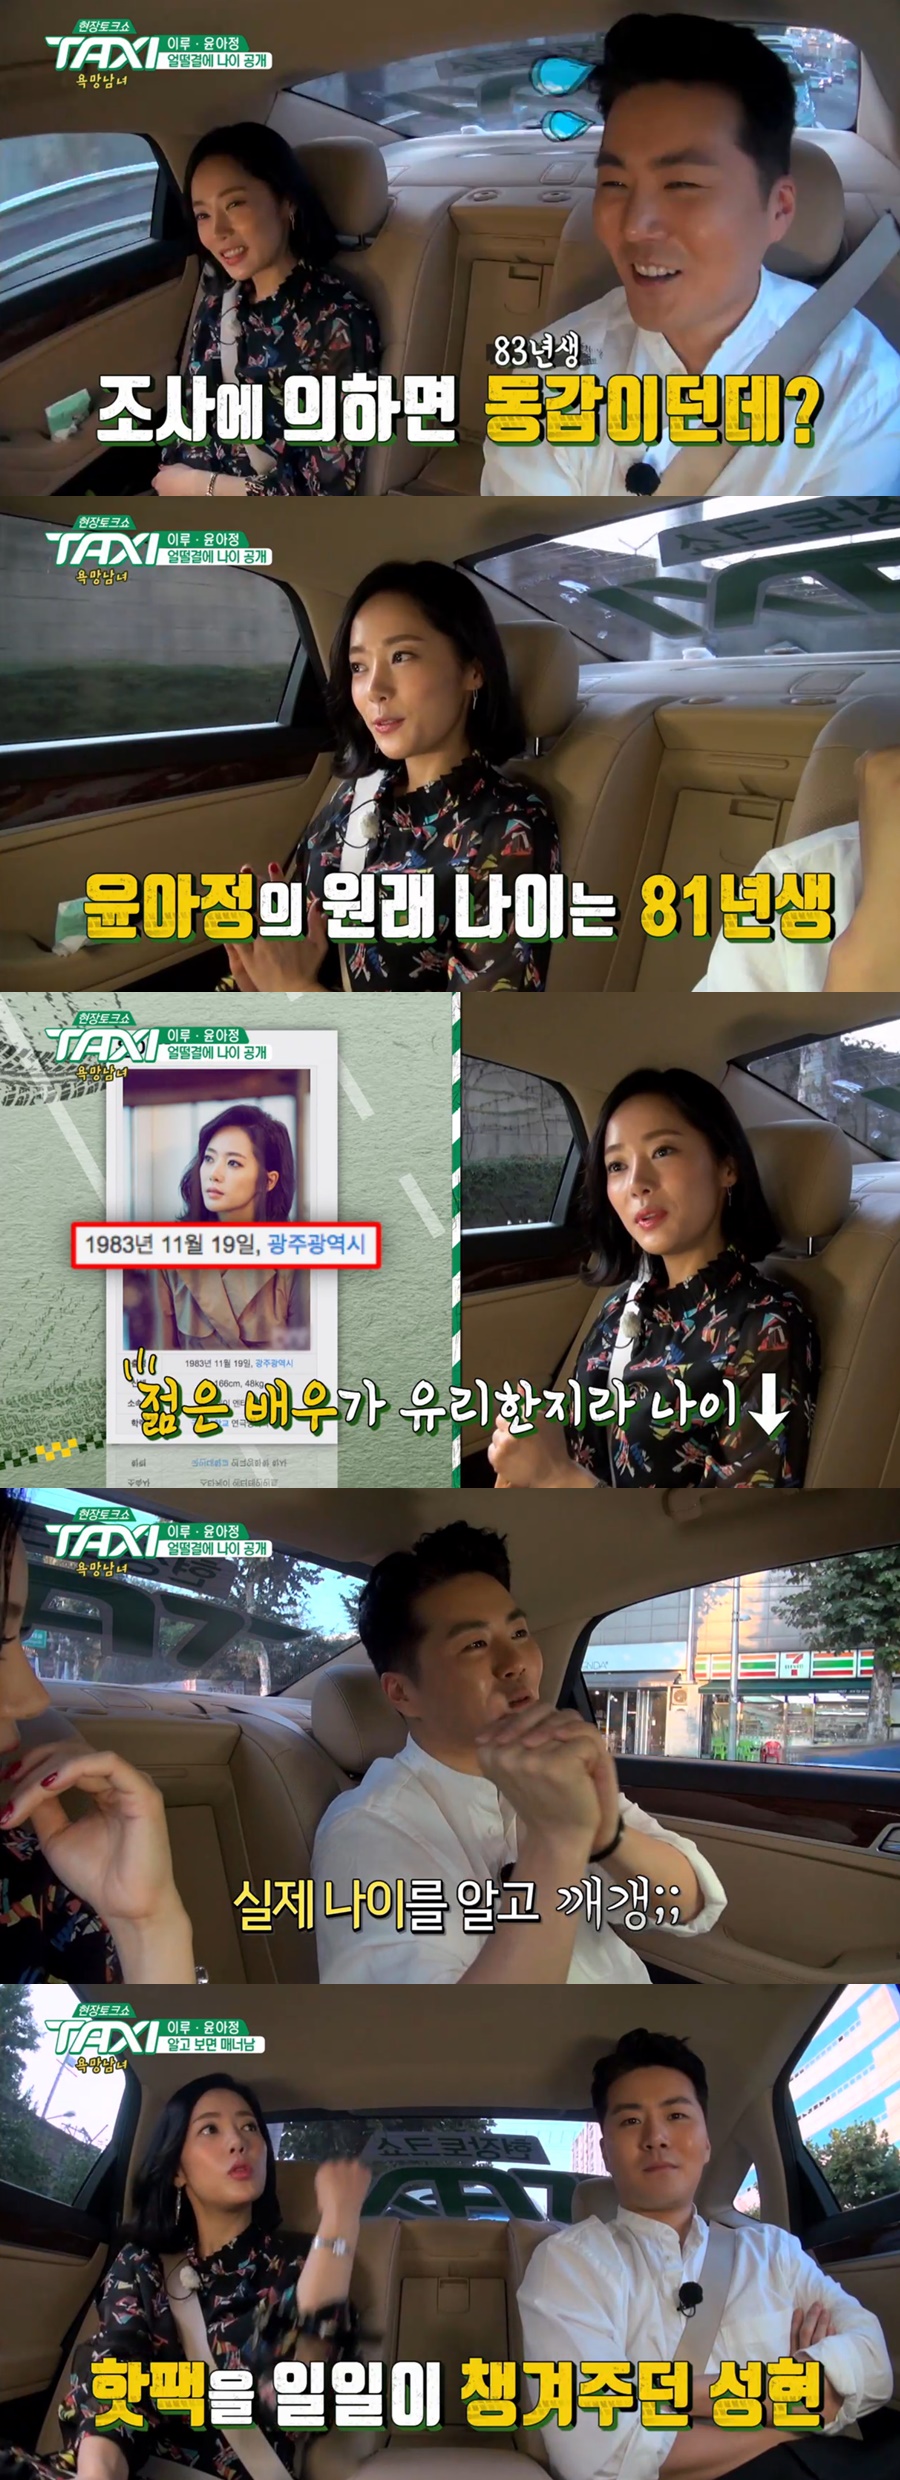 사진: 윤아정 / tvN '택시' 방송 캡처